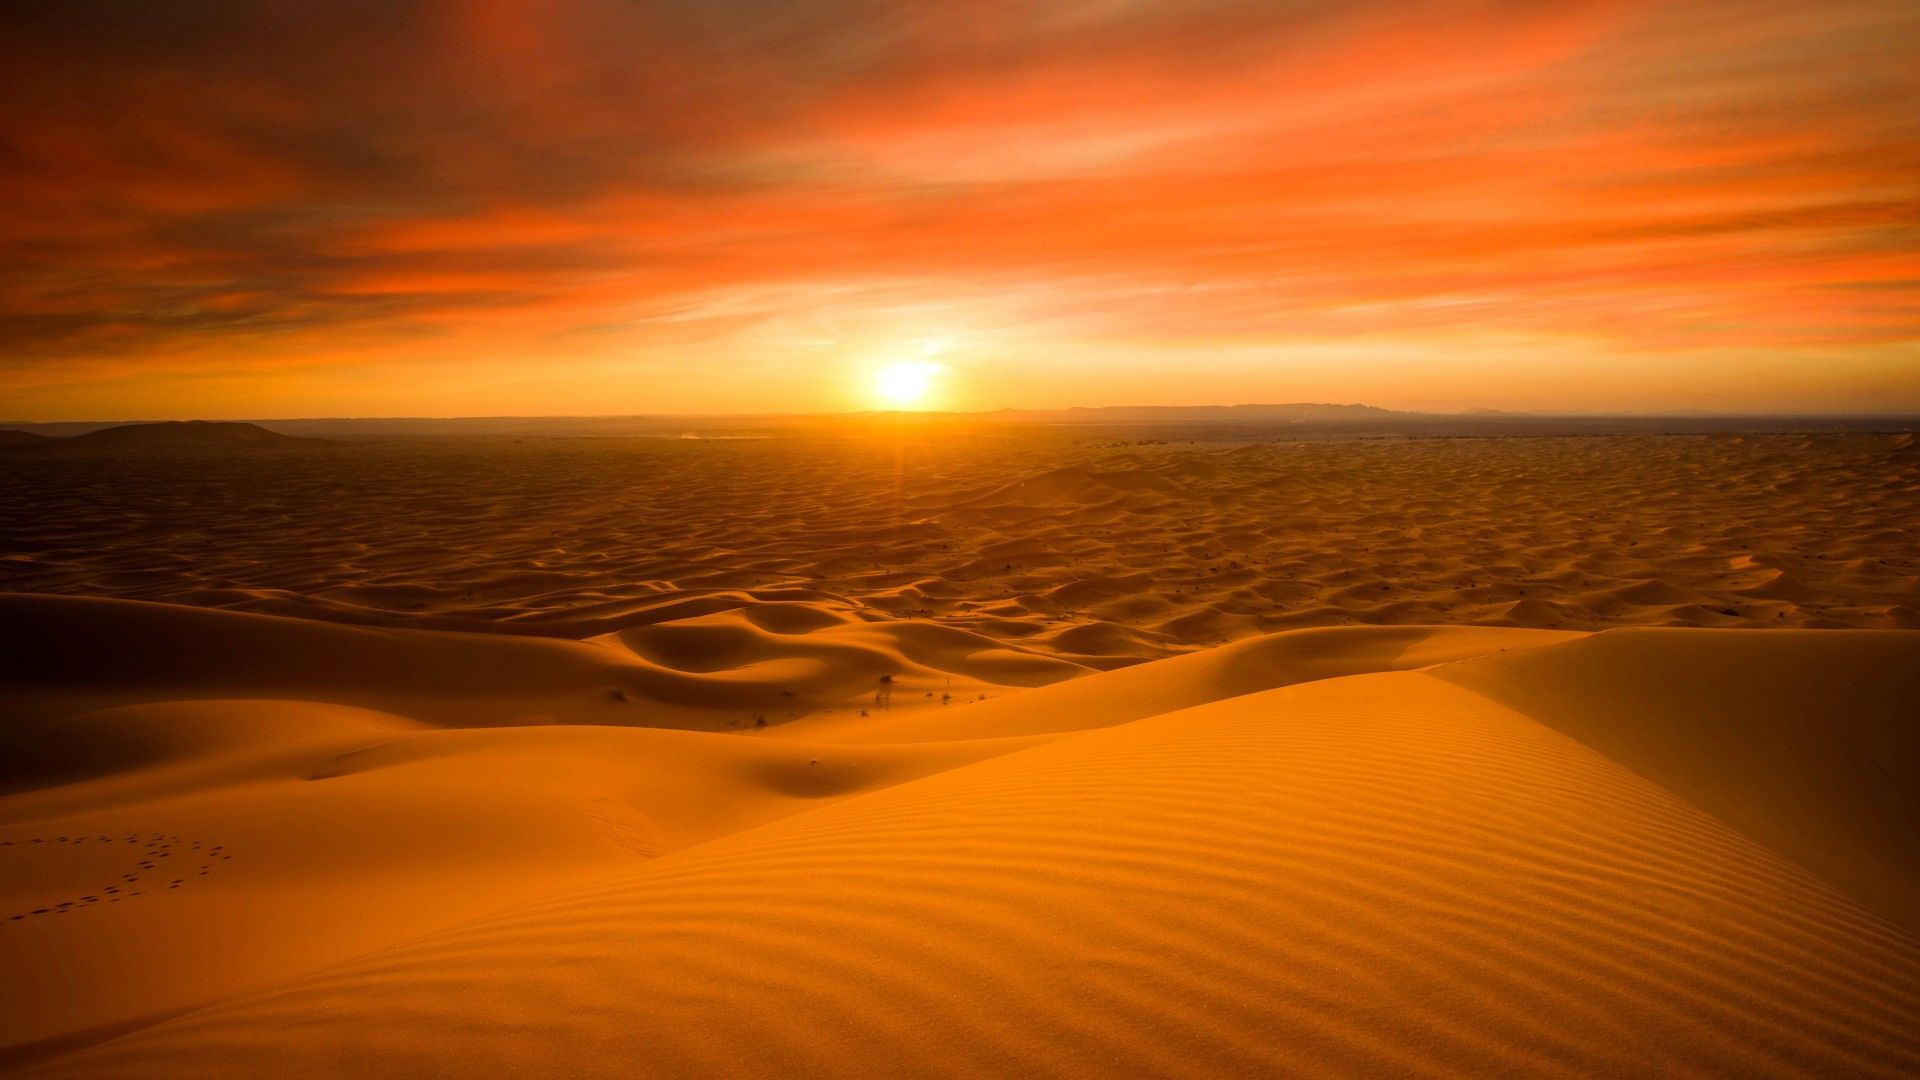 Sahara desert, Sand dunes, Sunset, 5K. Desert background, Sunset